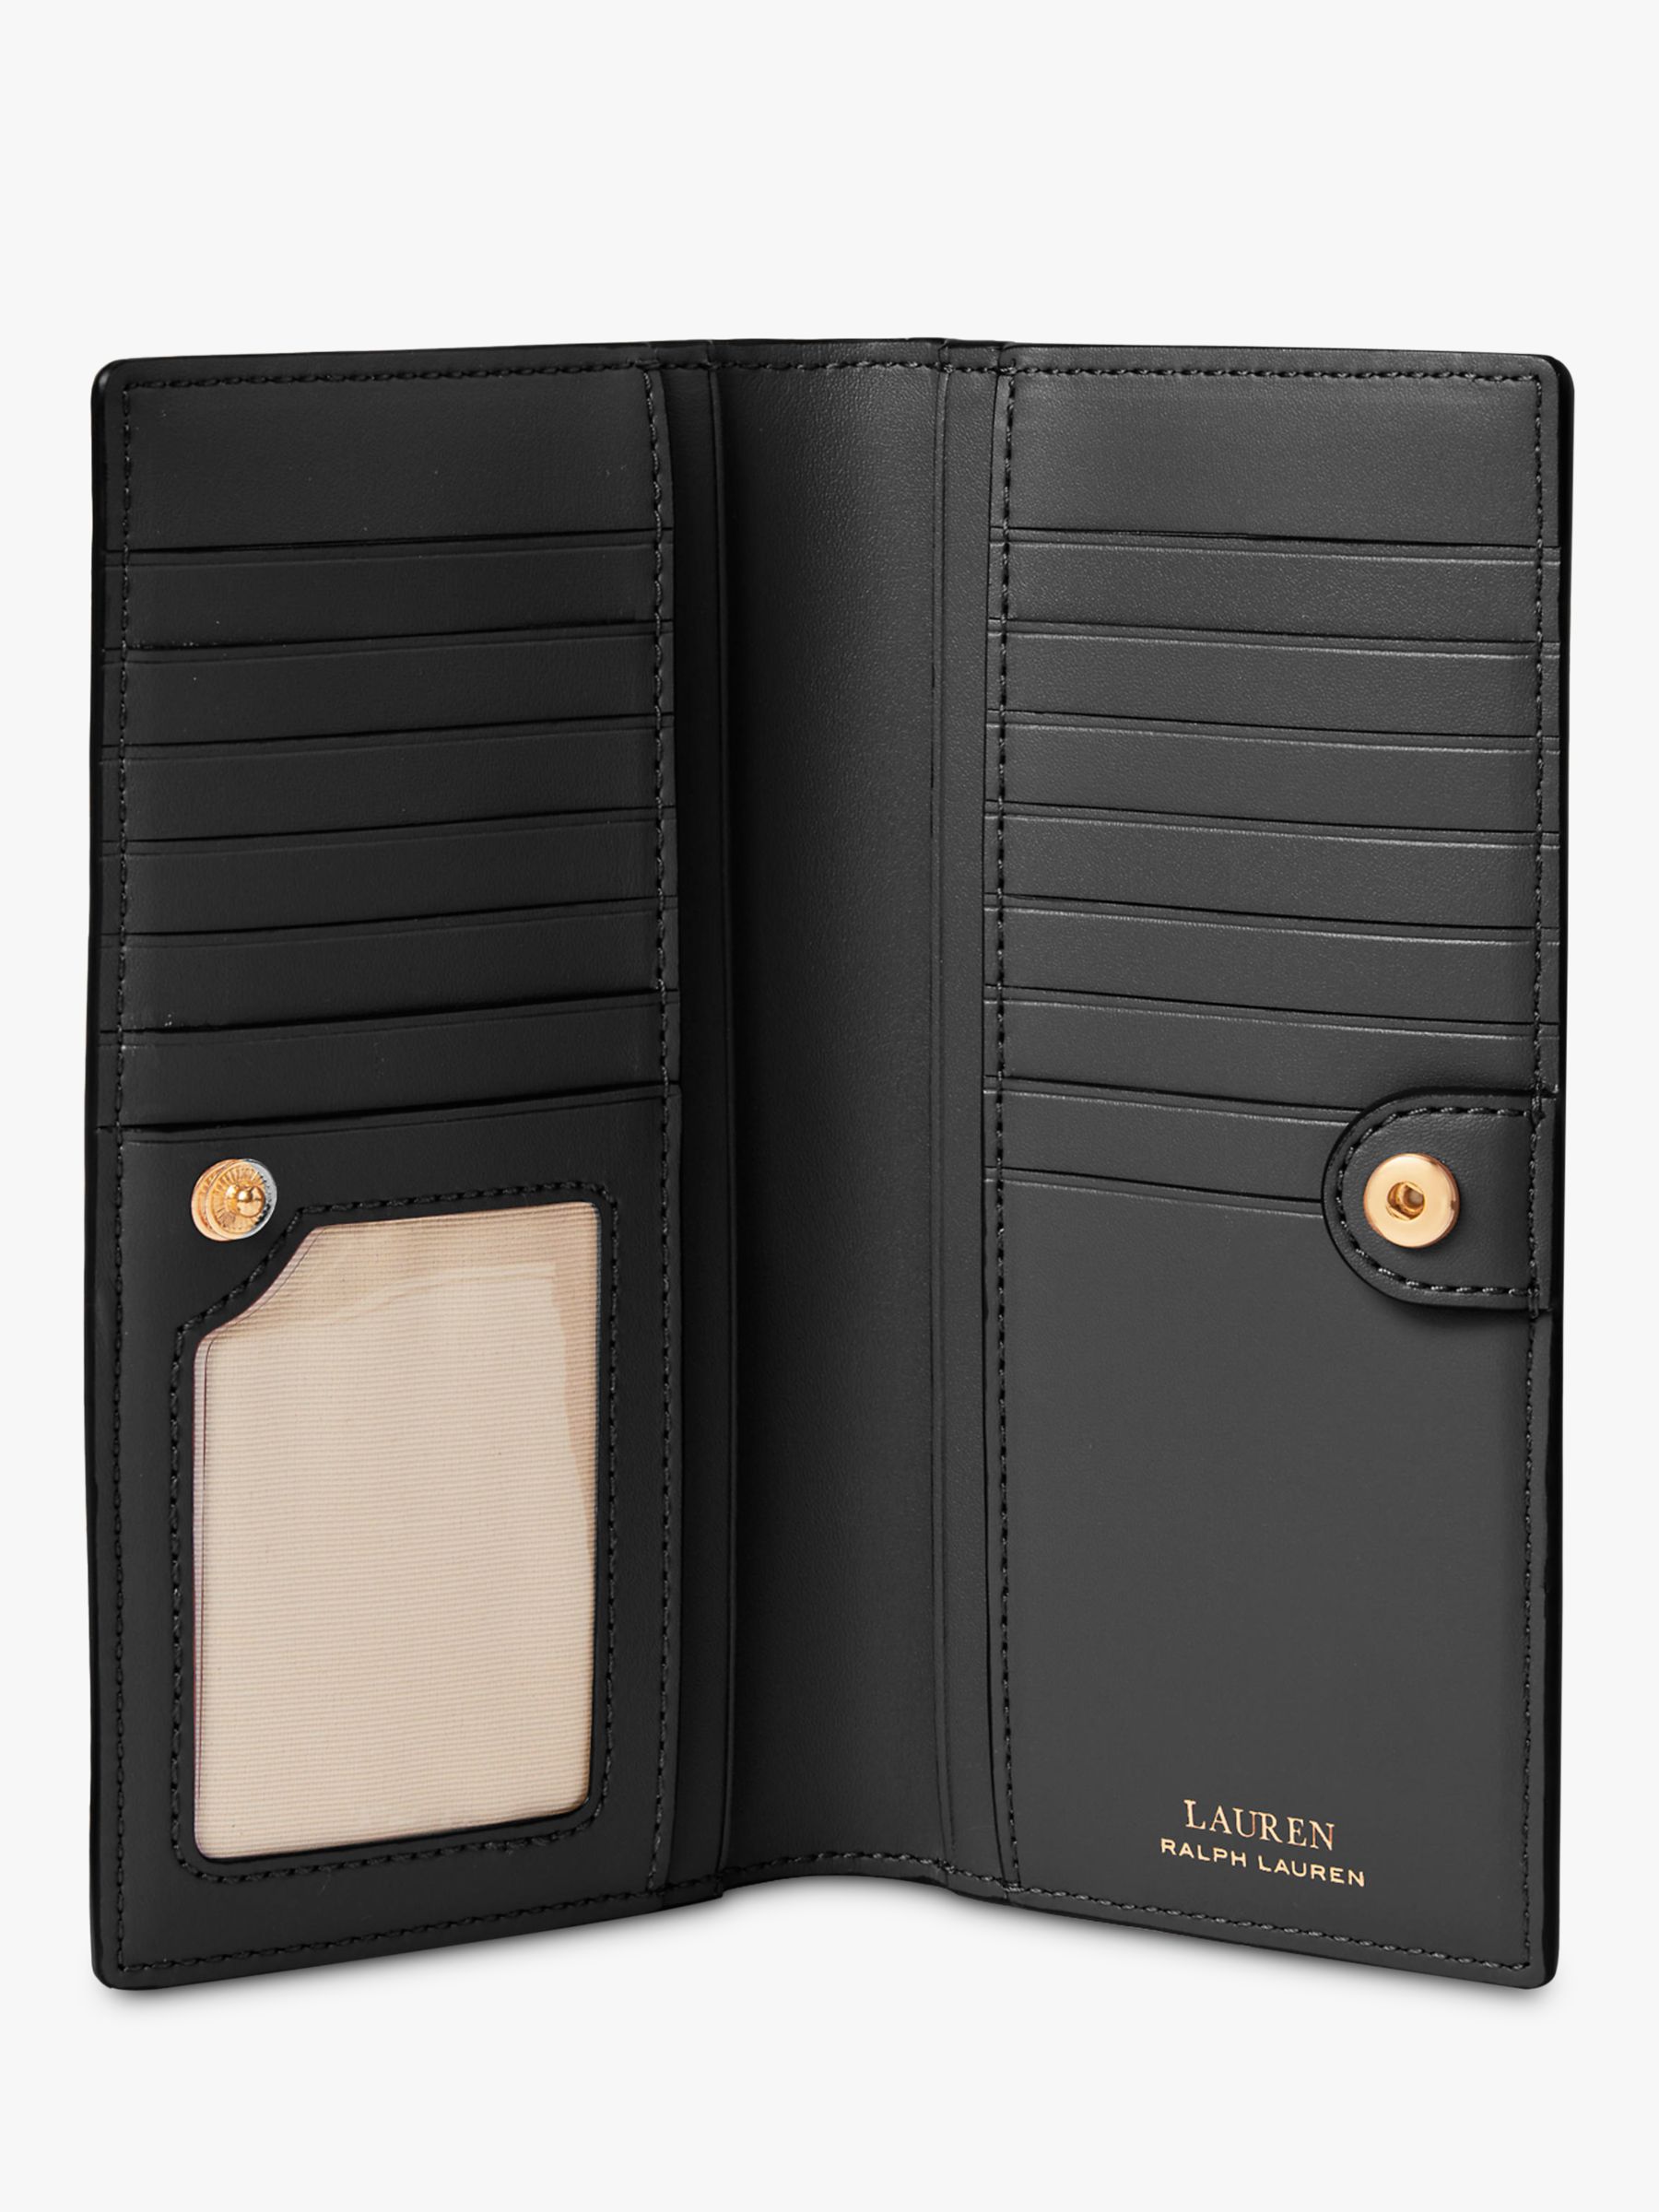 Lauren Ralph Lauren Slim Cross Hatch Leather Bi-Fold Wallet, Black at ...